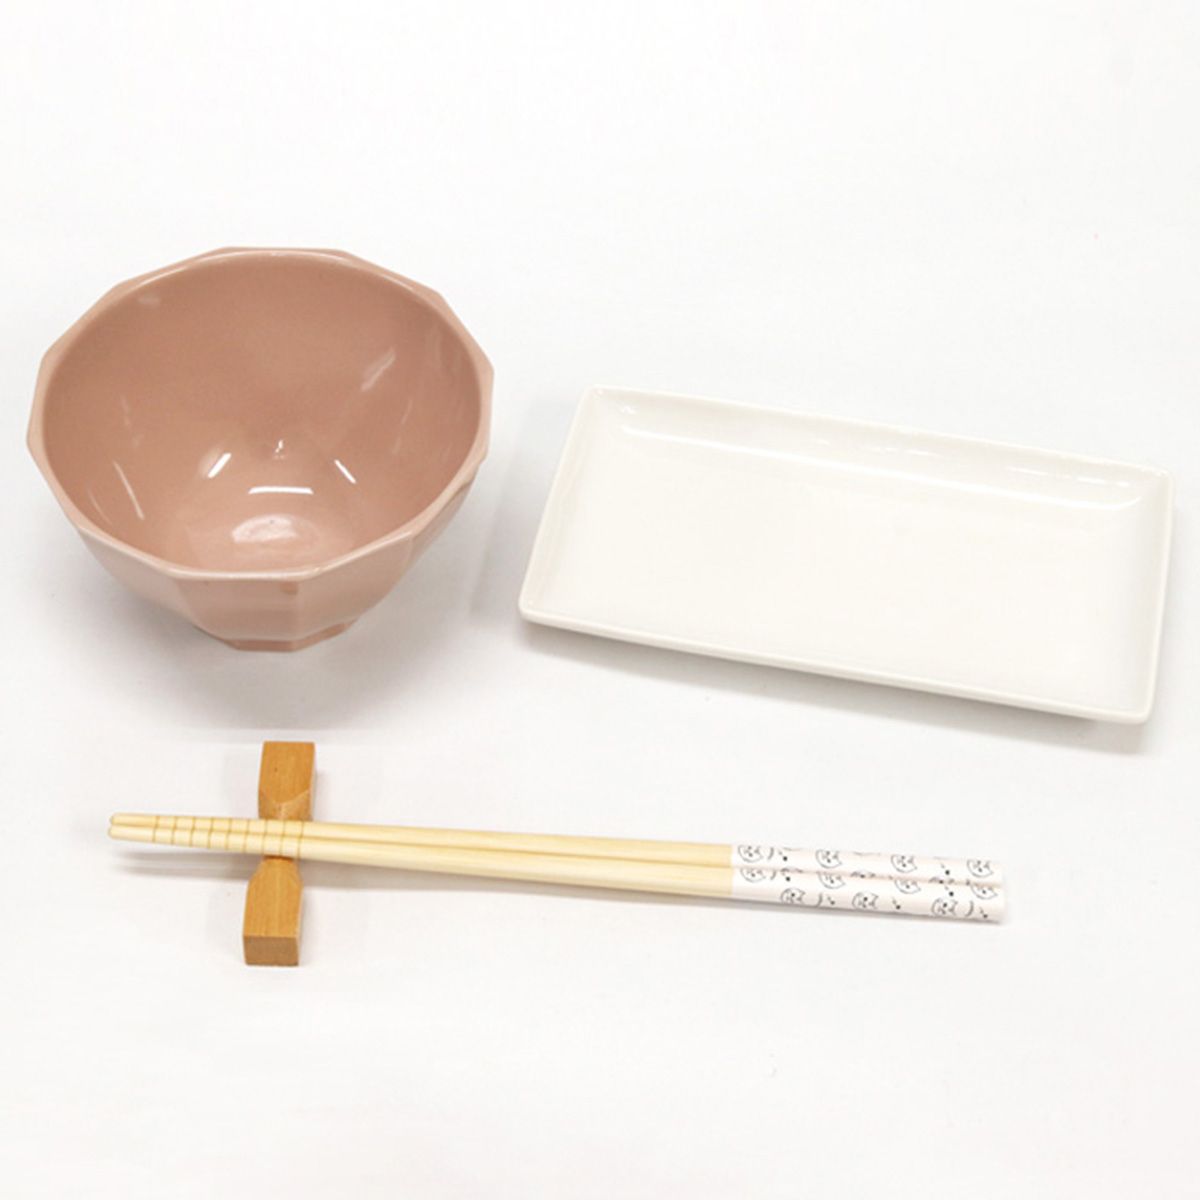 お箸 天然竹製  ミネット箸 ホワイト 22.5cm 345947